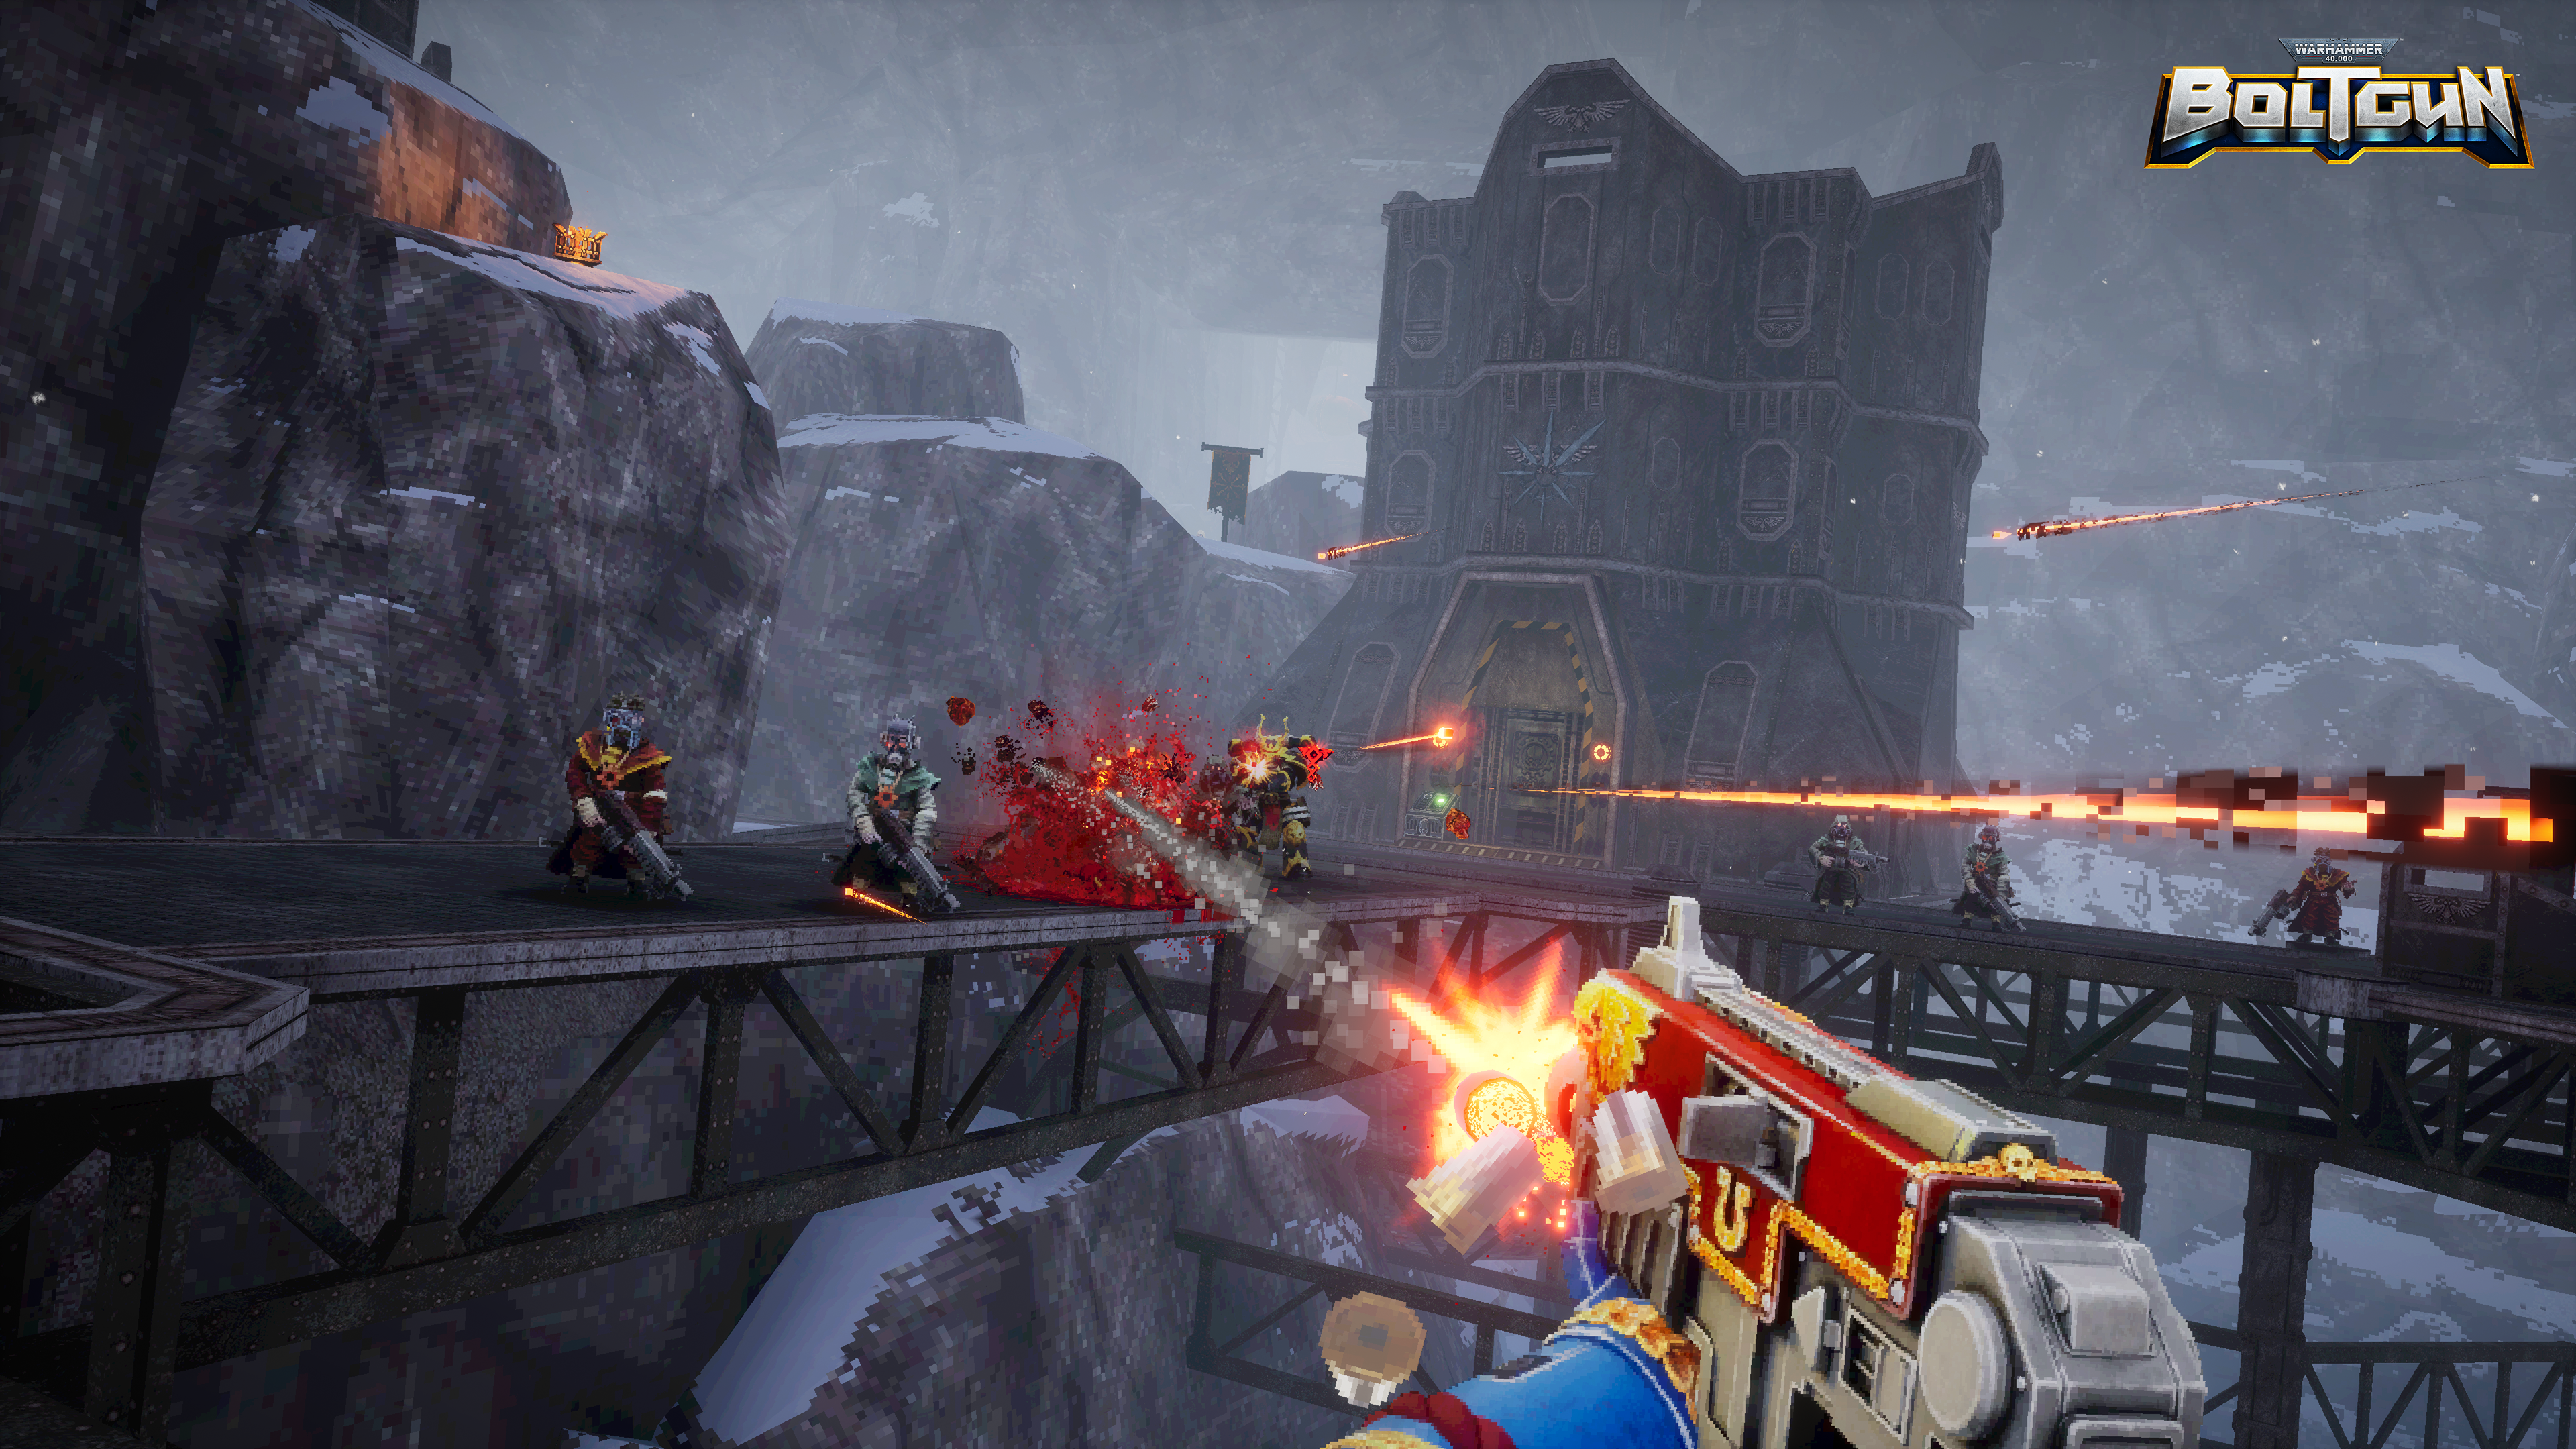 Uma metralhadora atira em cultistas em Warhammer 40.000: Boltgun.